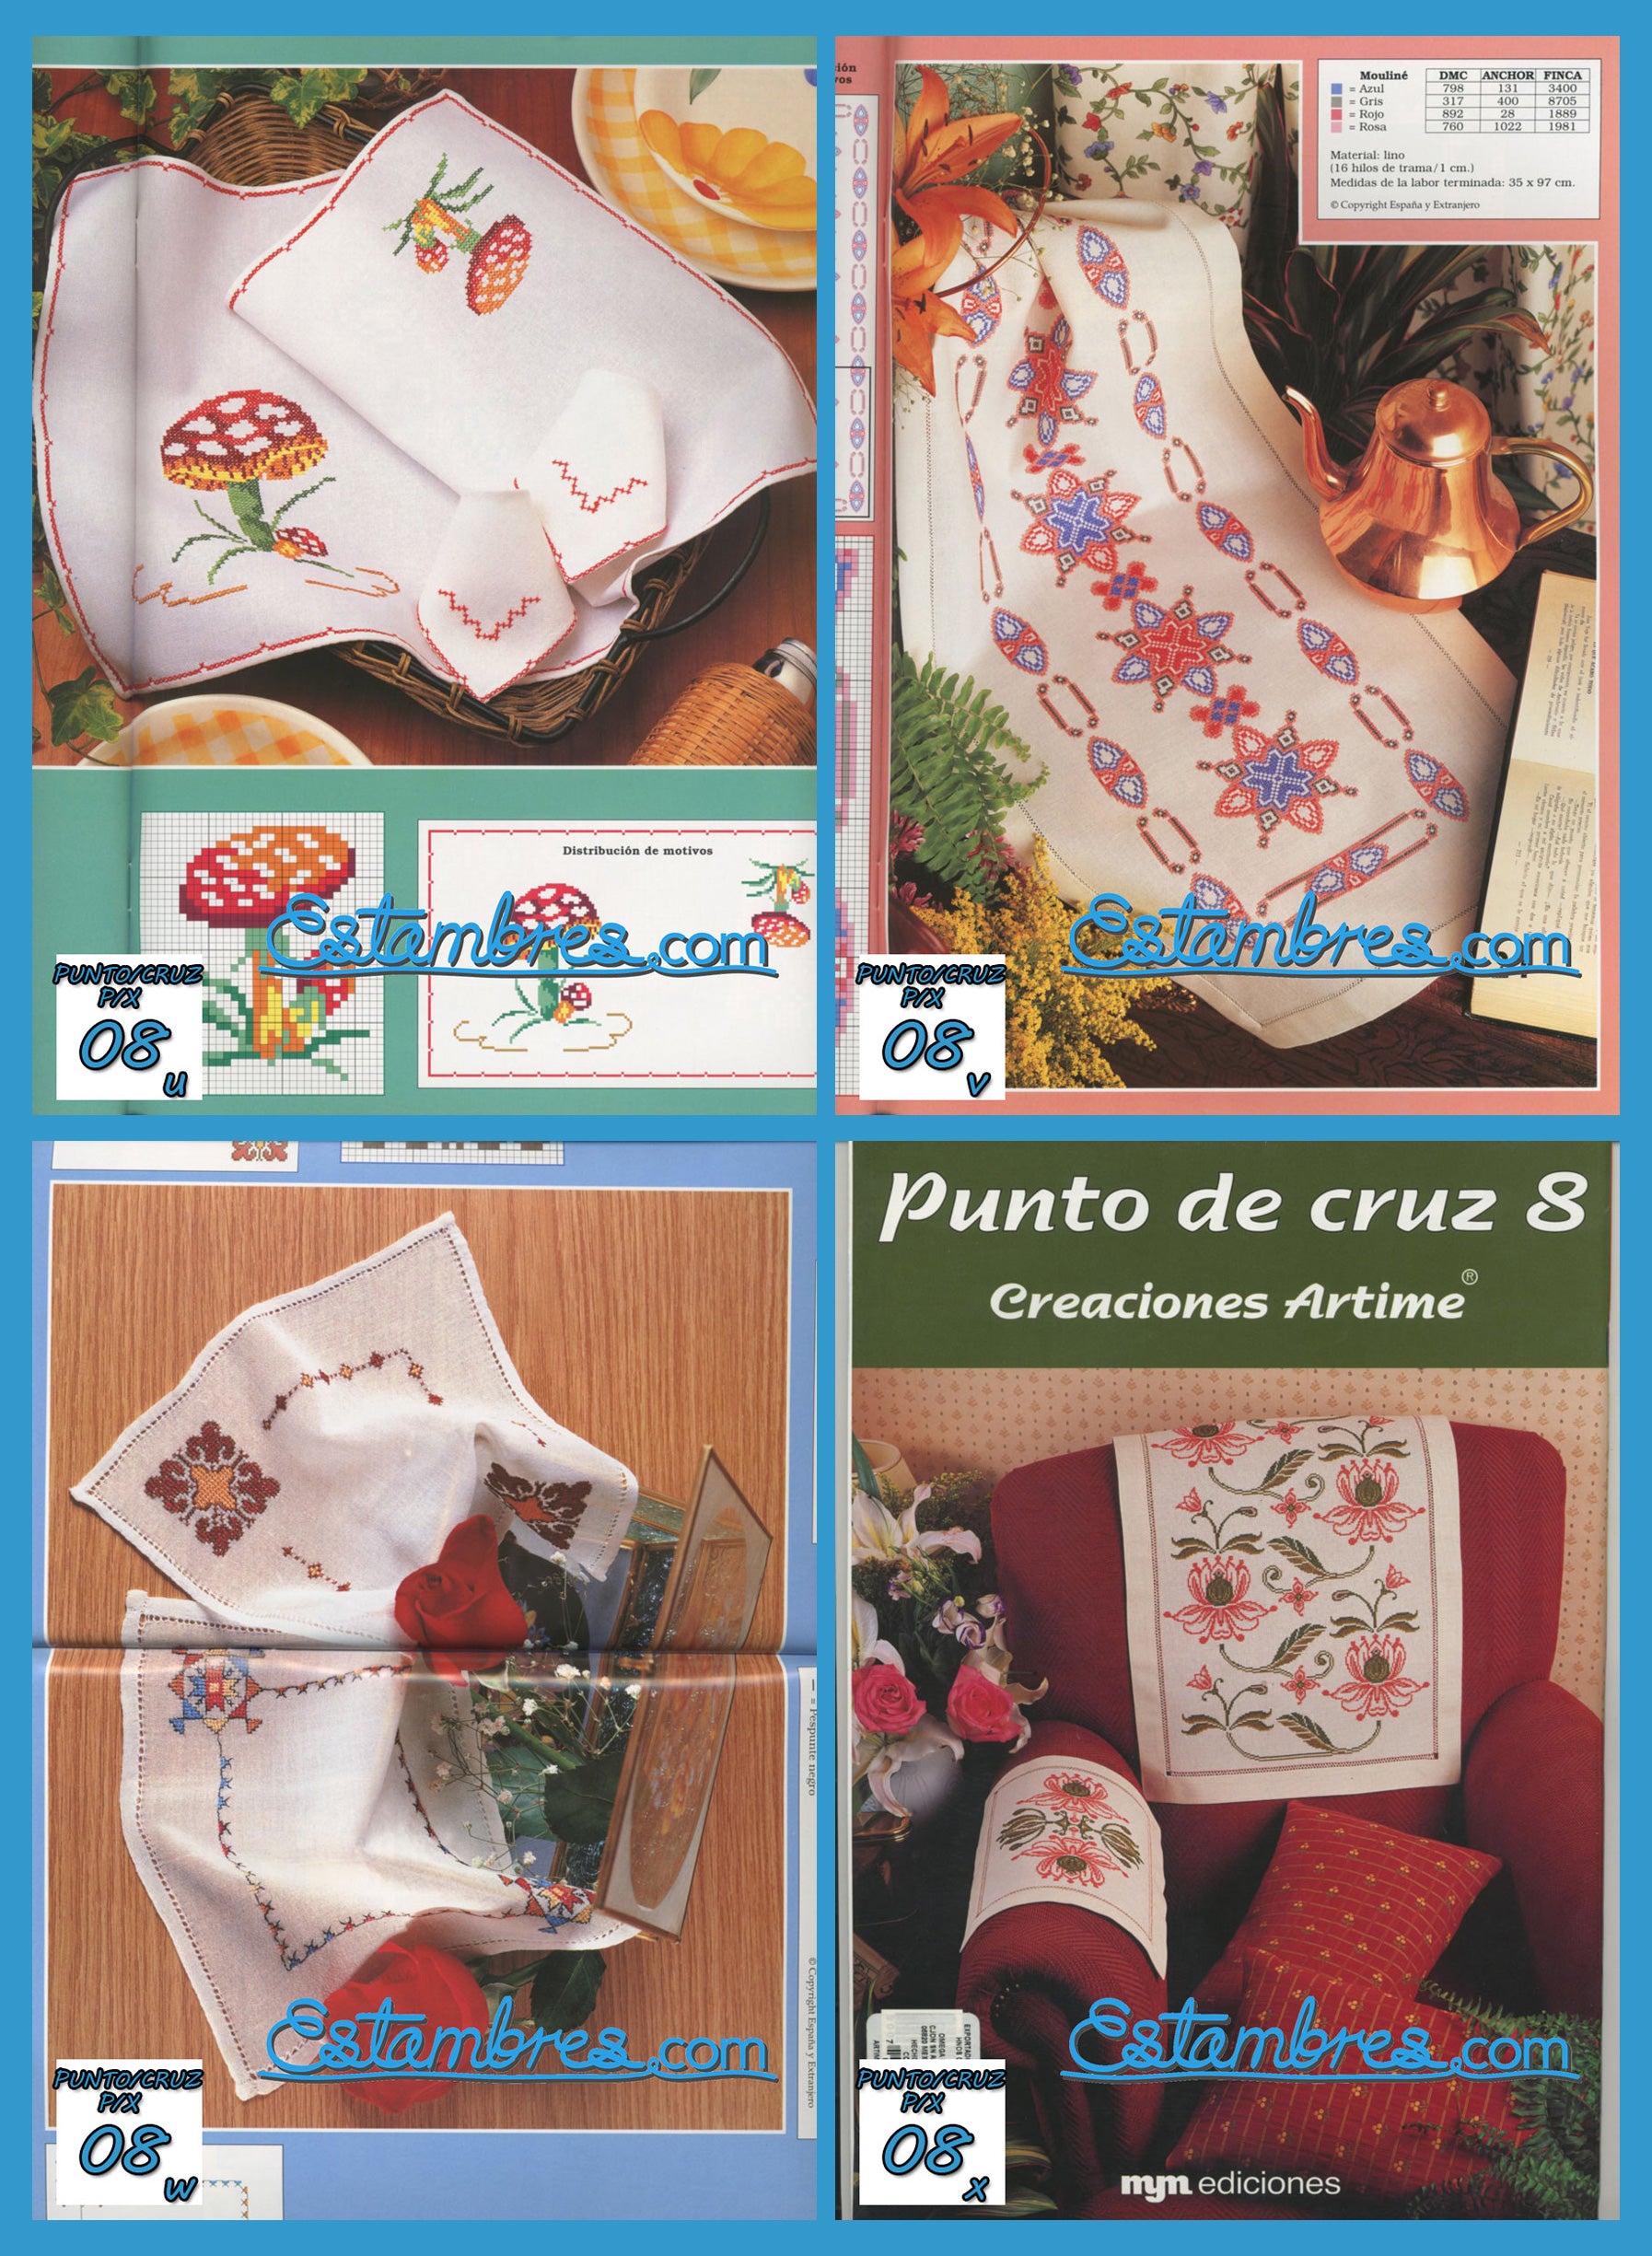 Revista Española de Punto de Cruz de la coleccion Artime, contiene muestras elaboradas en punto de cruz, con sus respectivos esquemas de Punto de Cruz, y su respectiva lista de colores a usar, para cada grafico.